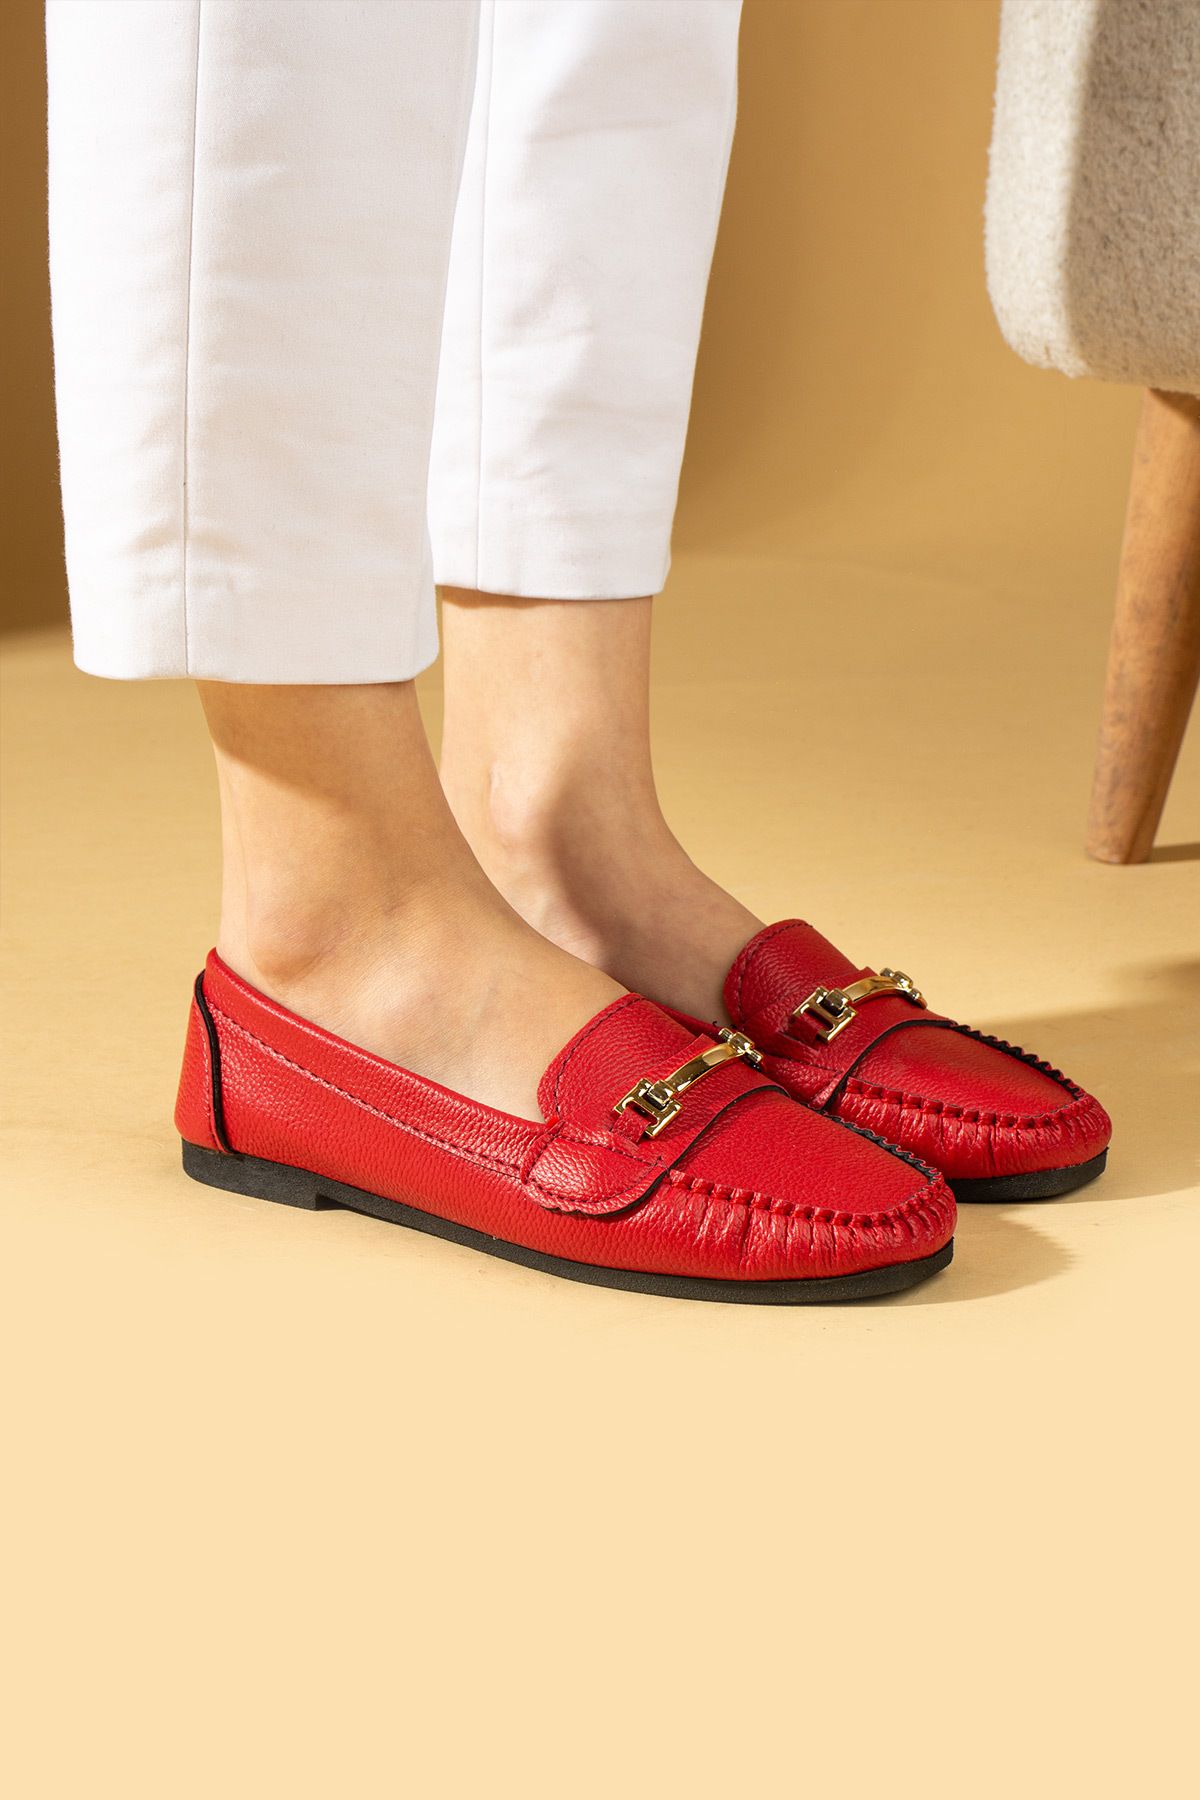 Pembe Potin Kadın Babet Kırmızı Tokalı Hafif Rahat Taban Şık Günlük Ayakkabı